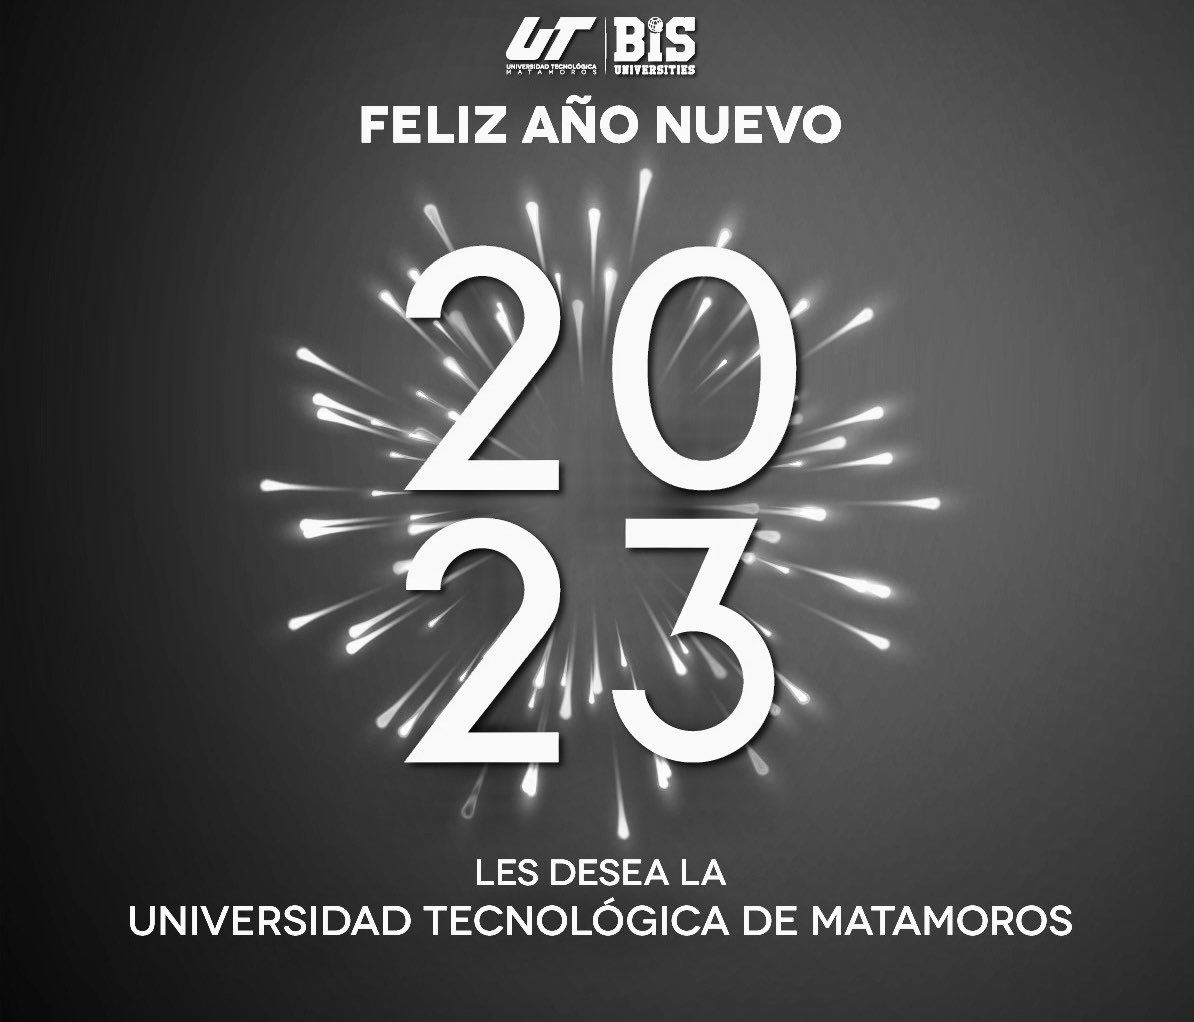 Universidad Tecnológica de Matamoros